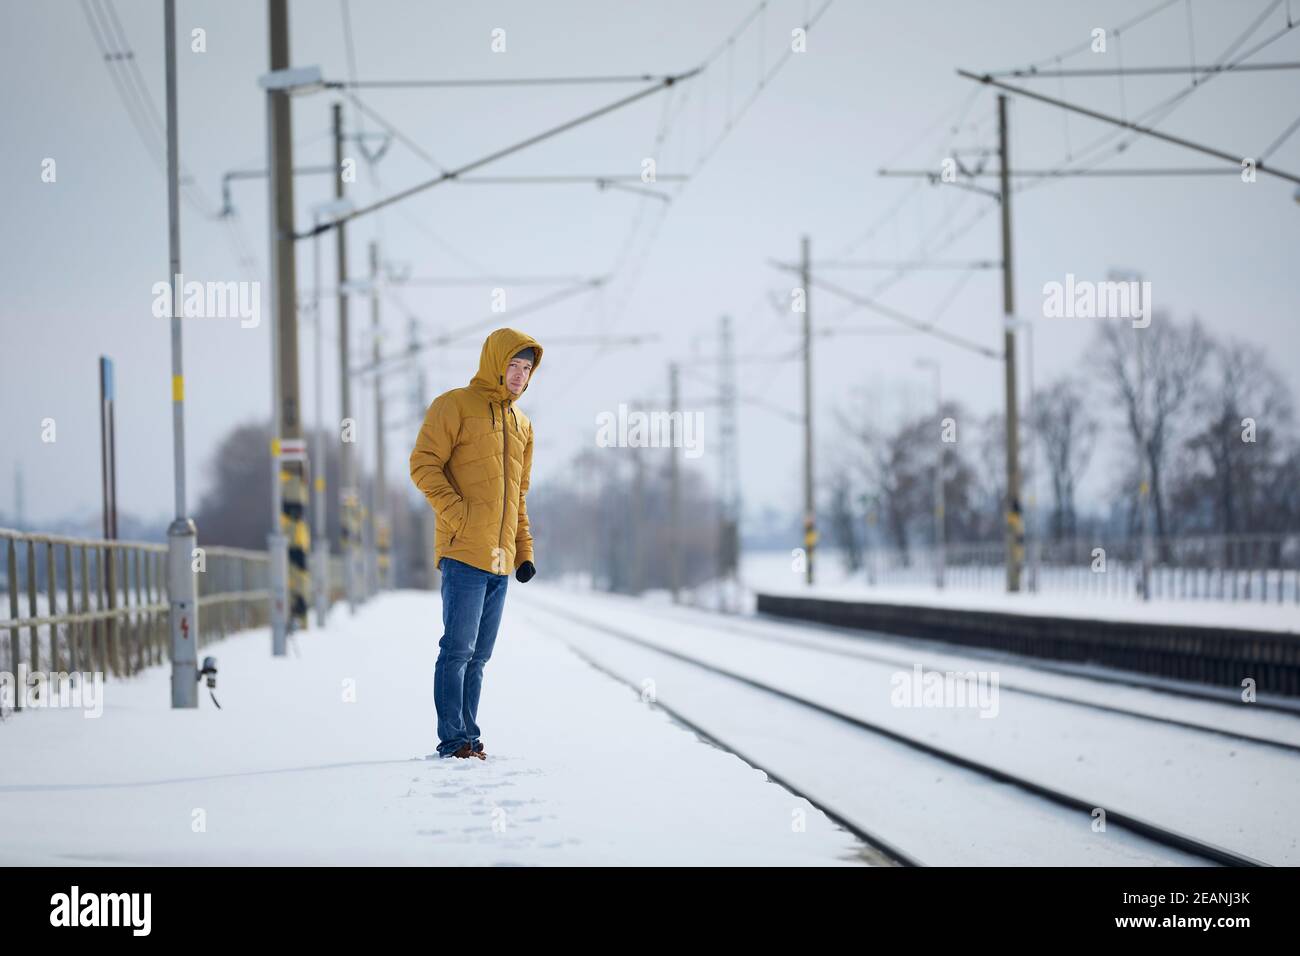 Verschneite Bahnhof während frostigen Tag. Mann, der auf dem Bahnsteig steht und auf einen verspäteten Zug wartet. Stockfoto